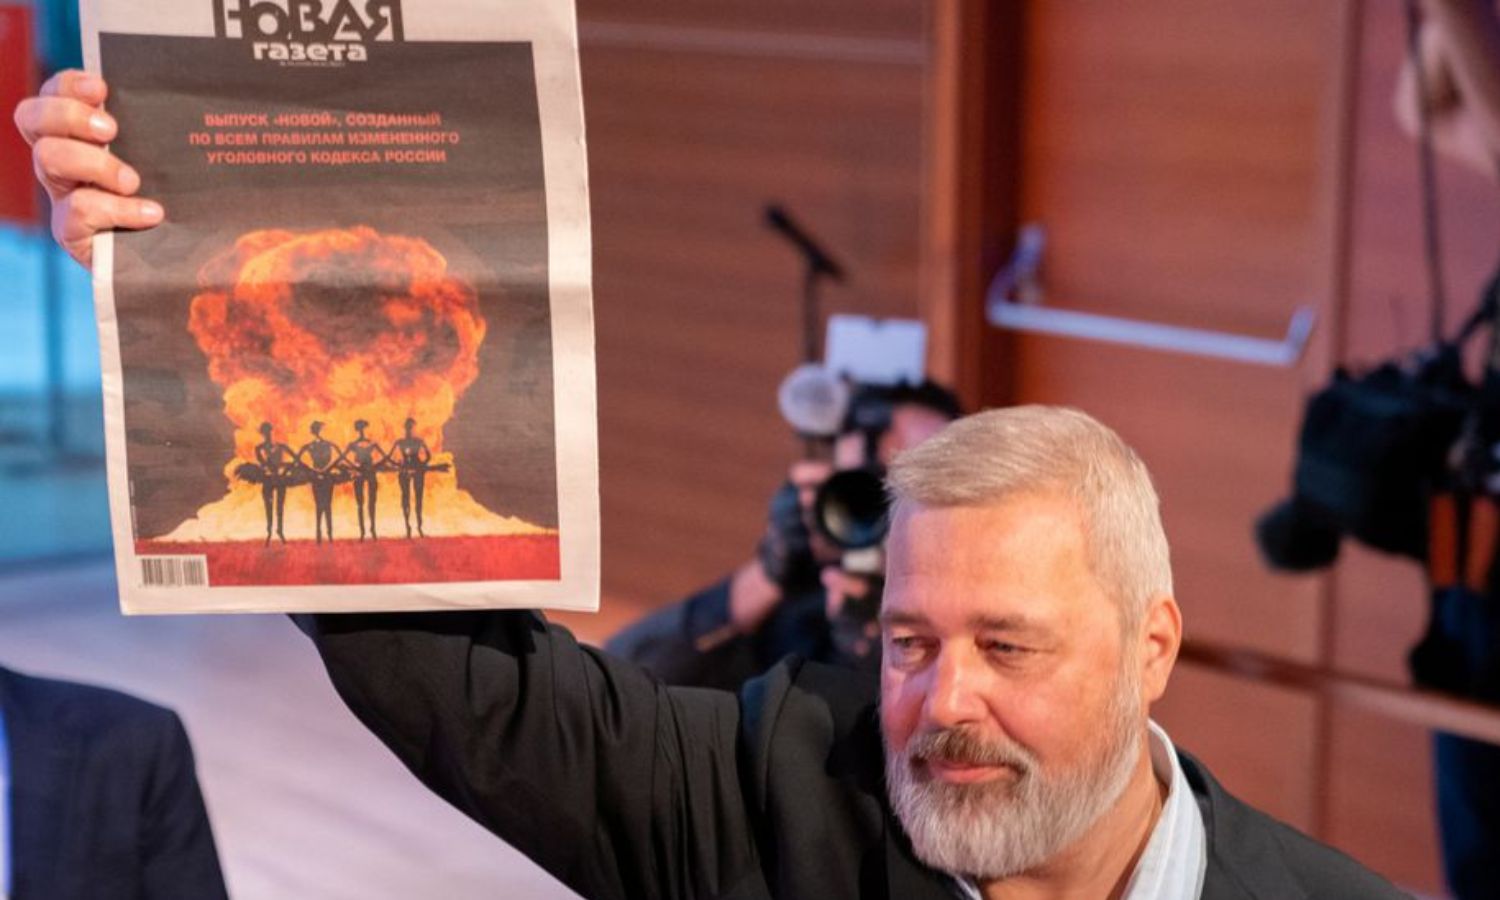 ديمتري موراتوف يحمل نسخة من جريدته "نوفيا جازيتا" بعد بيع ميداليته بجائزة نوبل للسلام لعام 2021 مقابل 103.5 مليون دولار (رويترز)